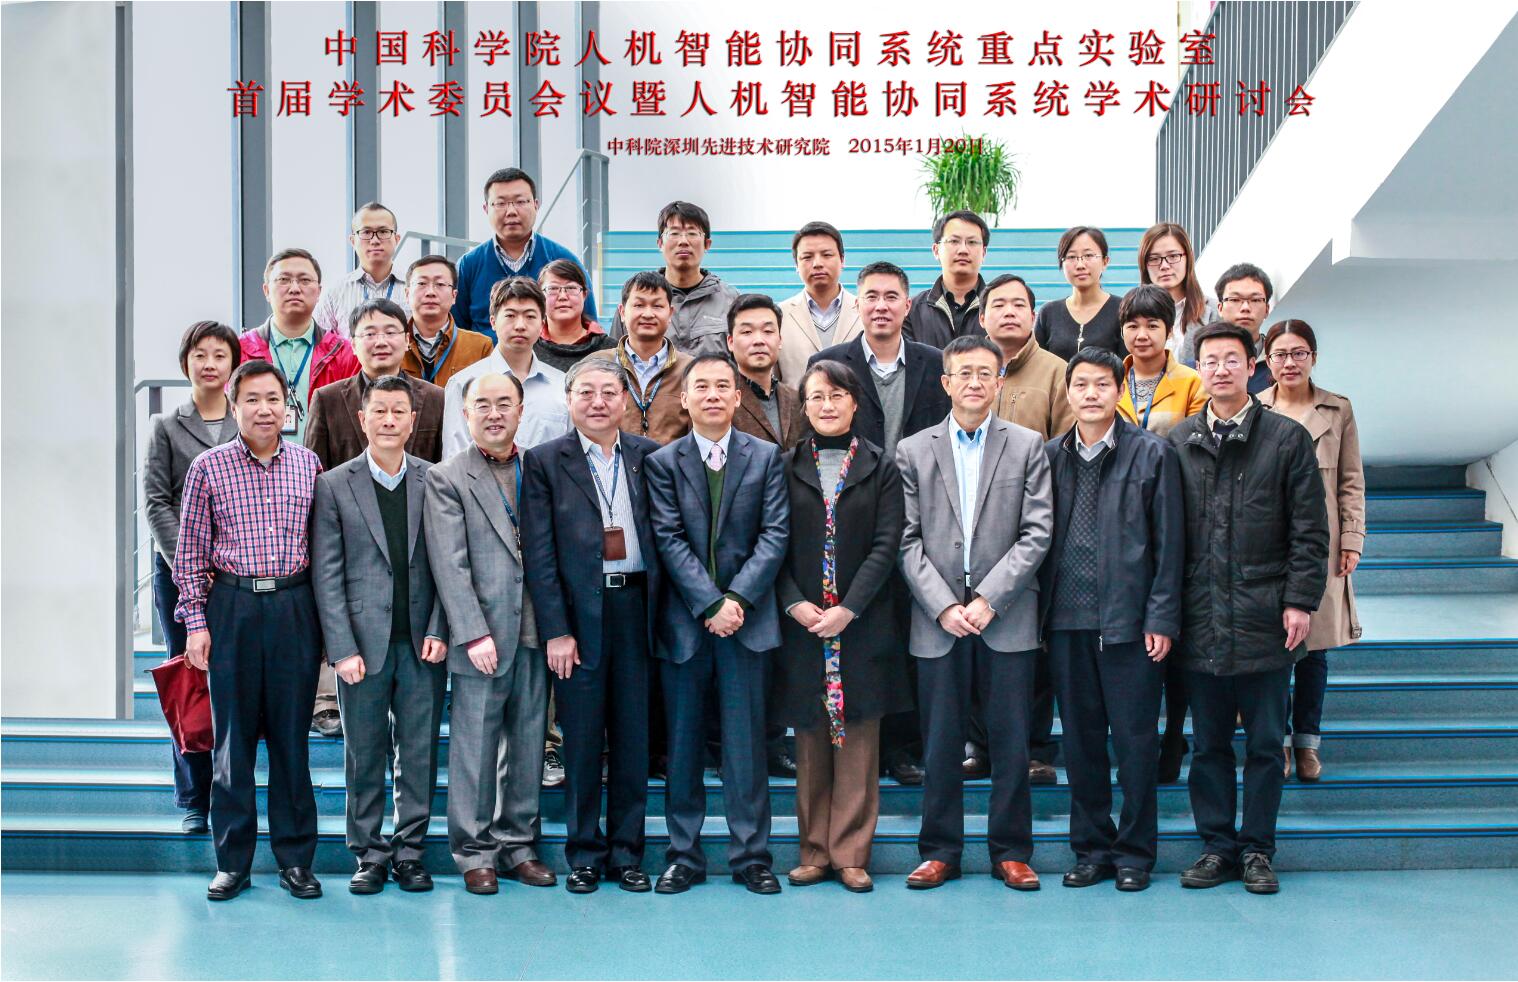 中国科学院人机智能协同系统重点实验室首届学术委员会议暨人机智能协同系统学术研讨会在深圳先进院召开